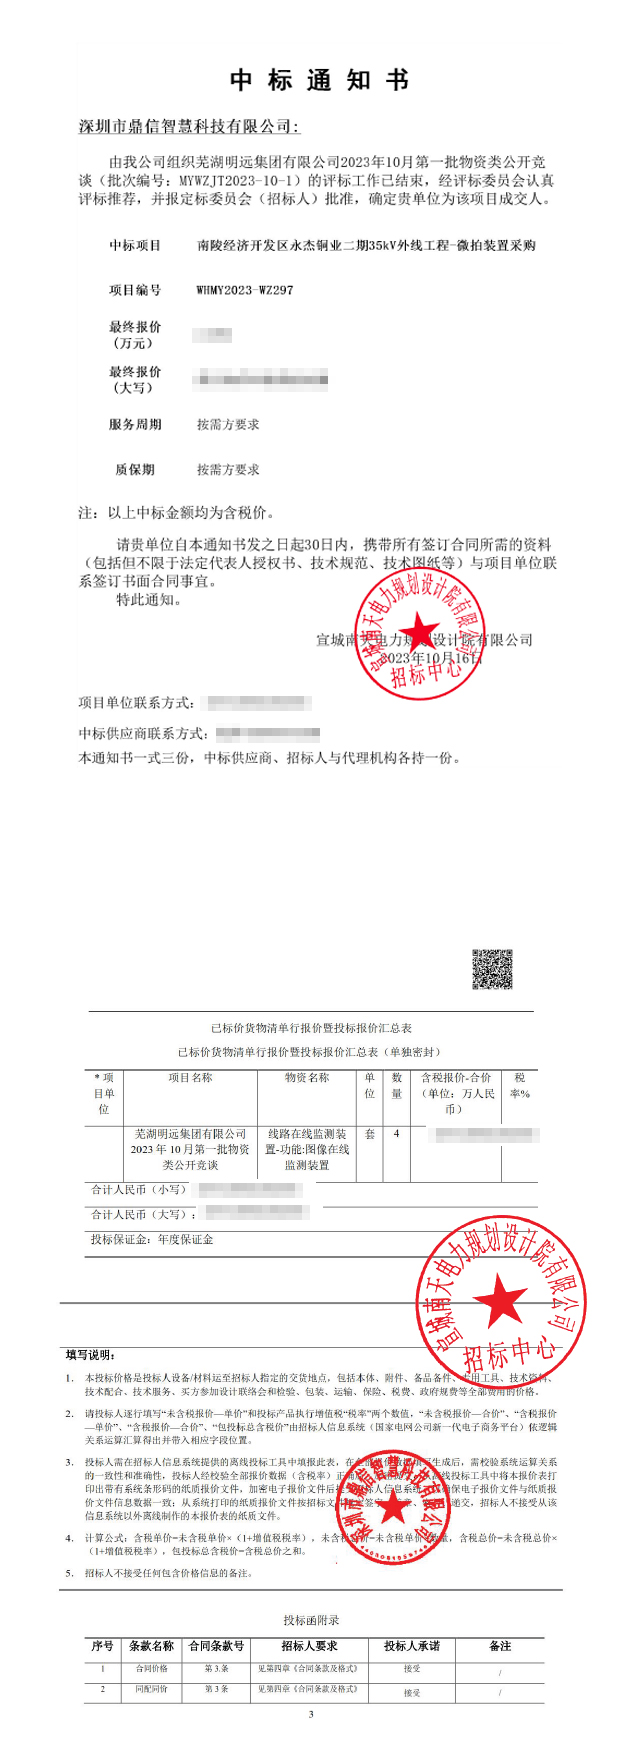 2023年10月26日成功中标芜湖明远集团有限公司主设备外线工程-微拍装置